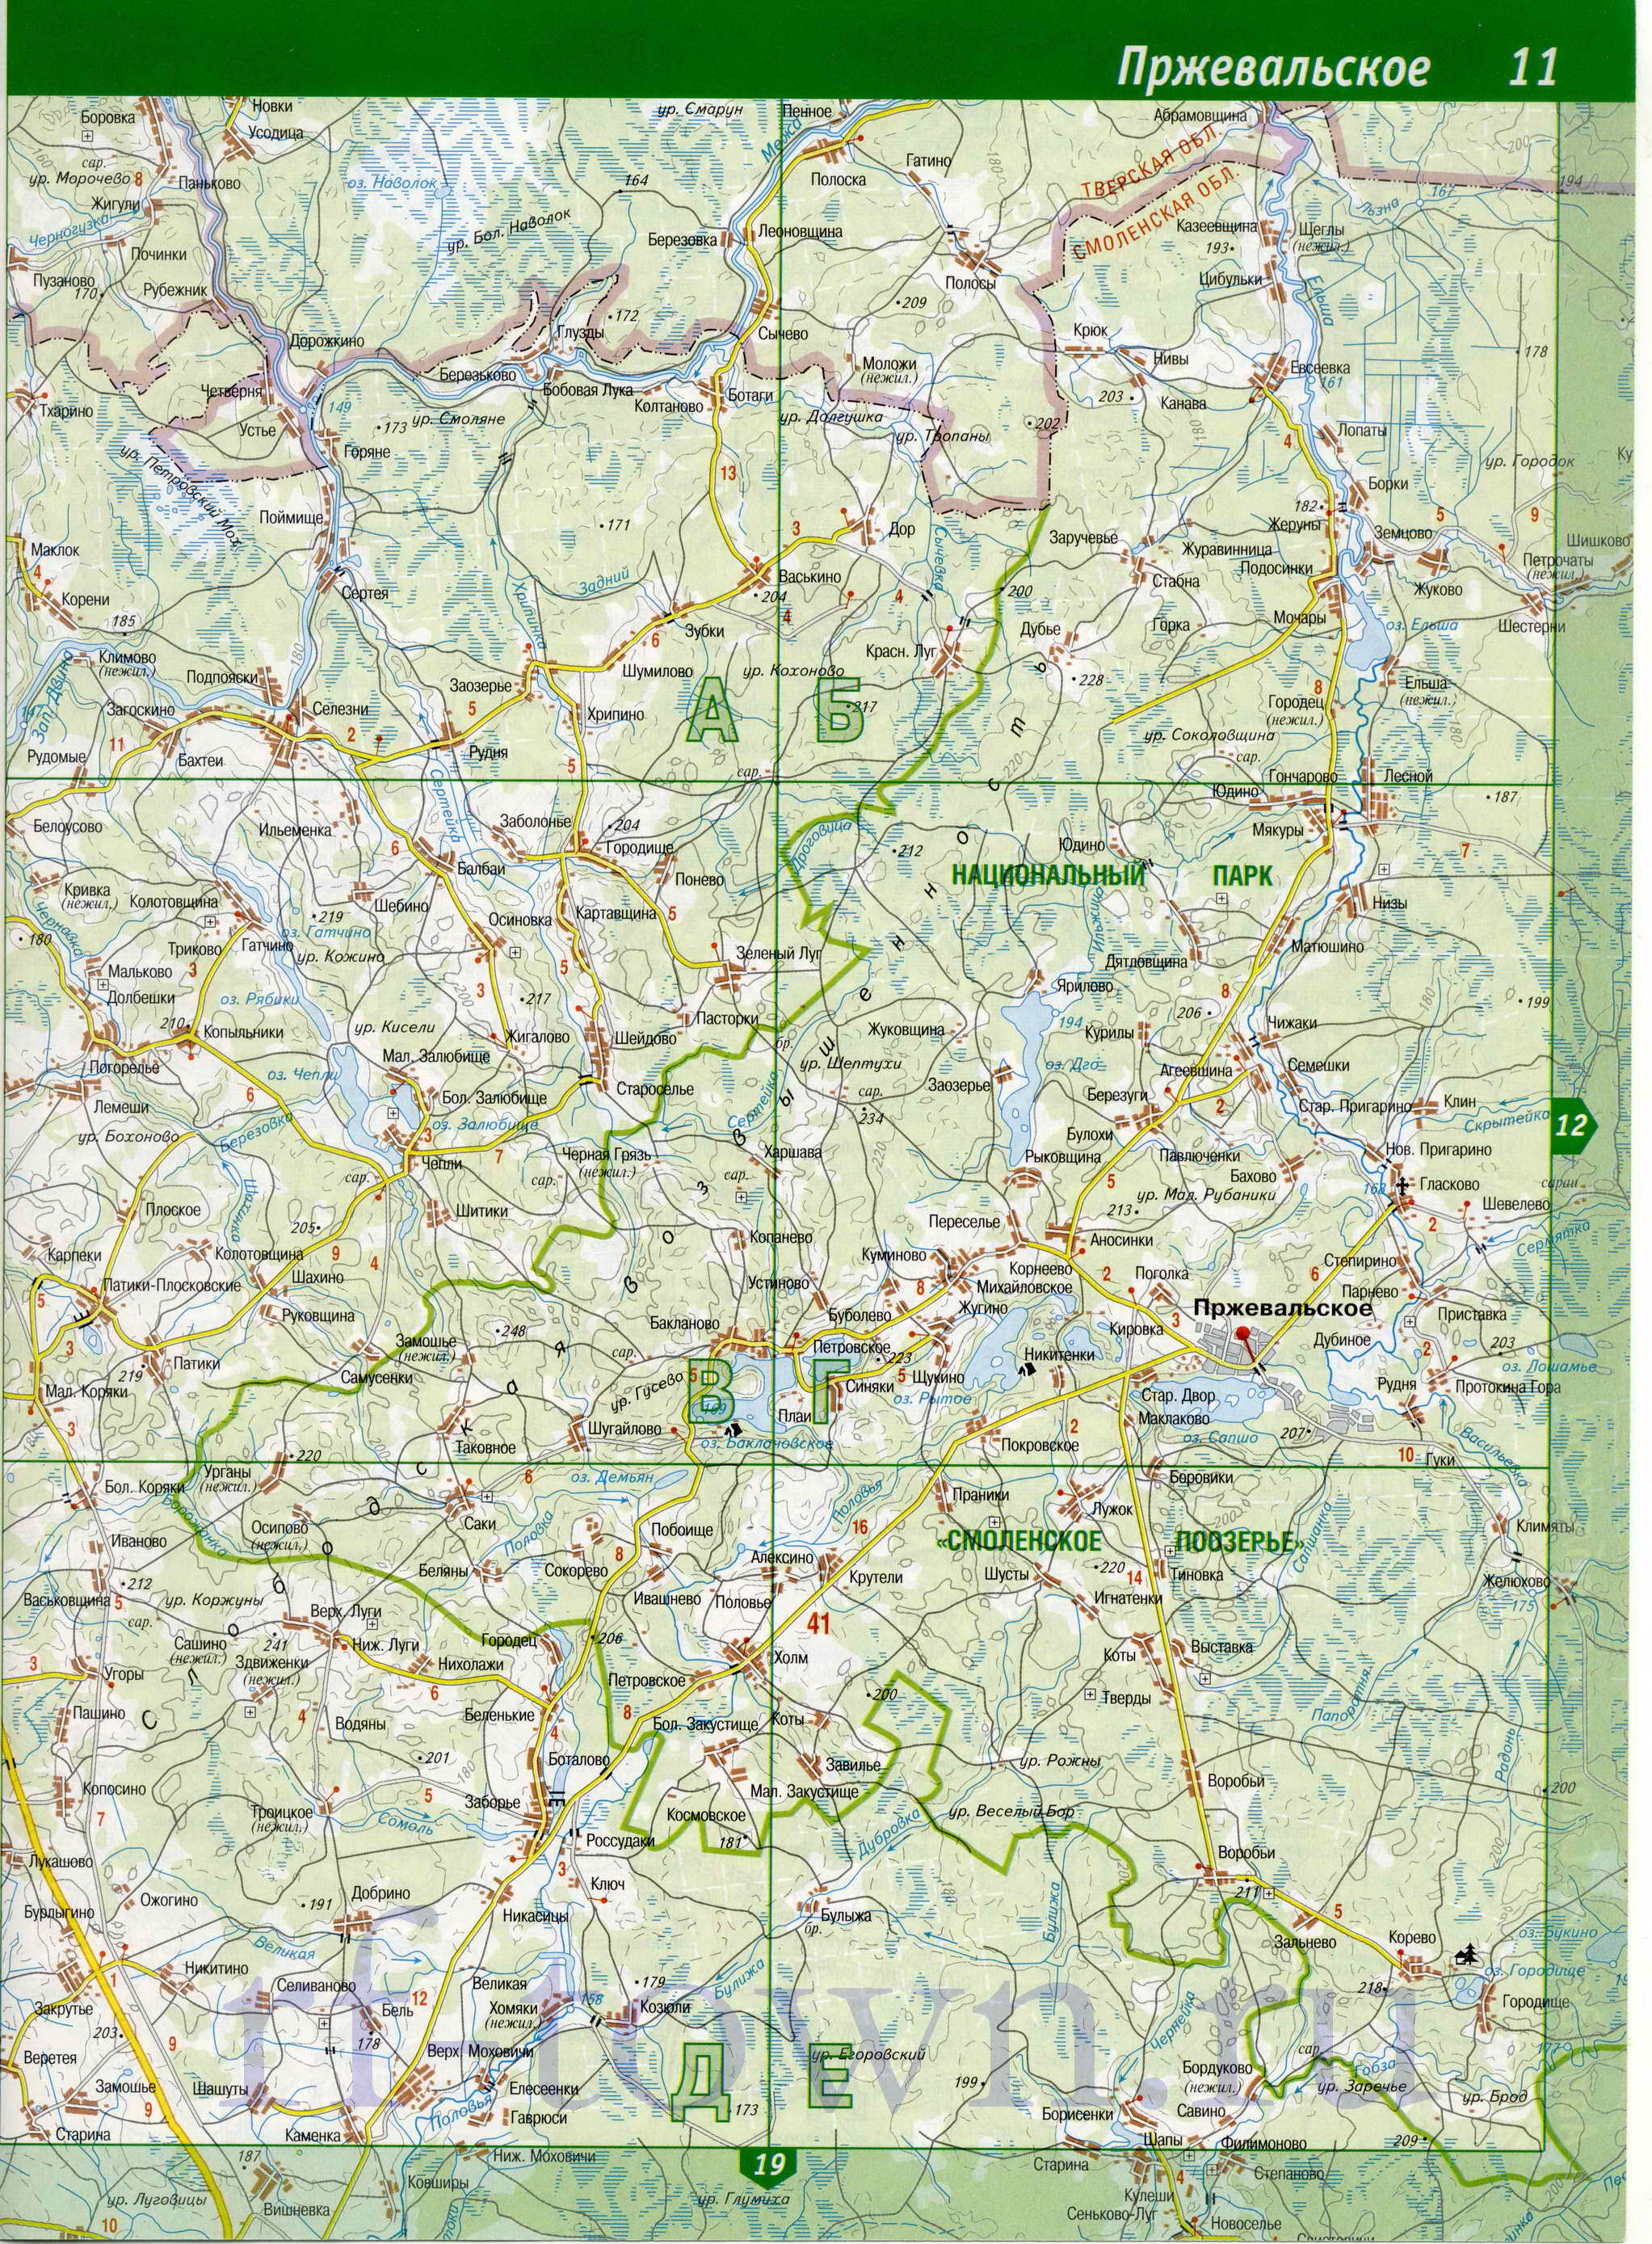 Карта Смоленской области топографическая. Смоленская область - подробная топографическая карта масштаба 1см:2км, B0 - 